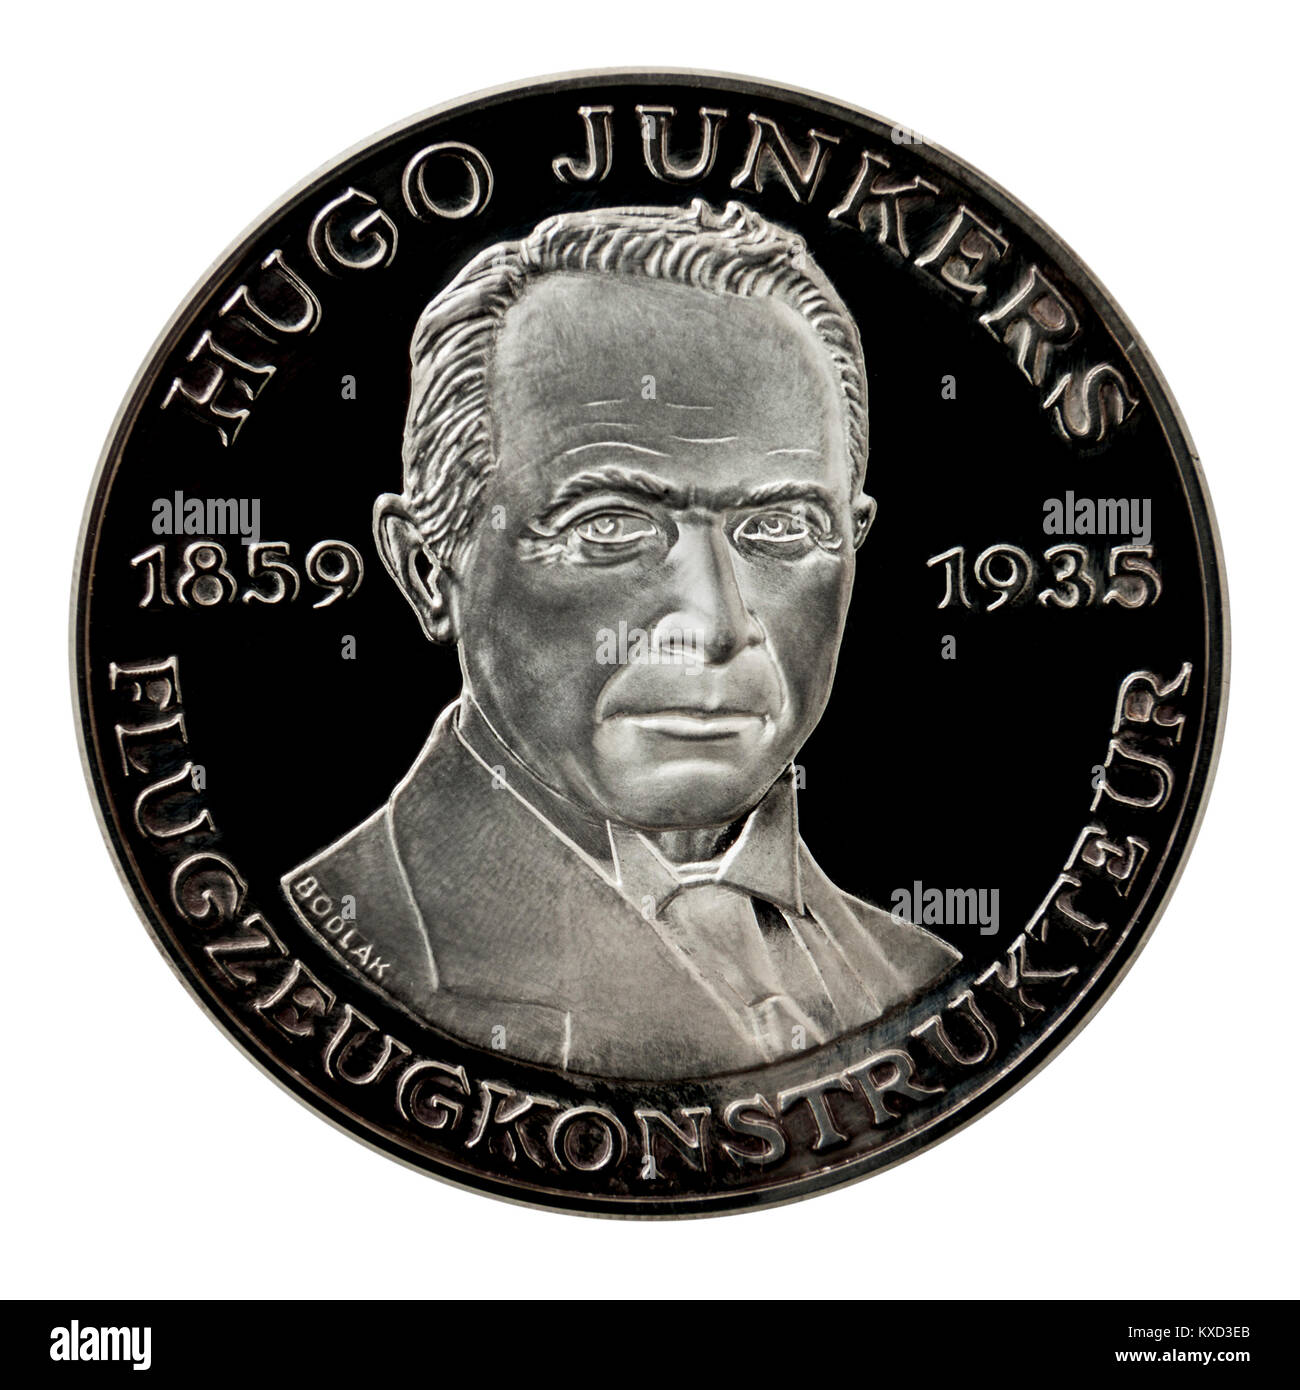 99,9% Beweis Silber Medaillon mit Hugo Junkers, dem berühmten deutschen Ingenieur und Designer. Stockfoto